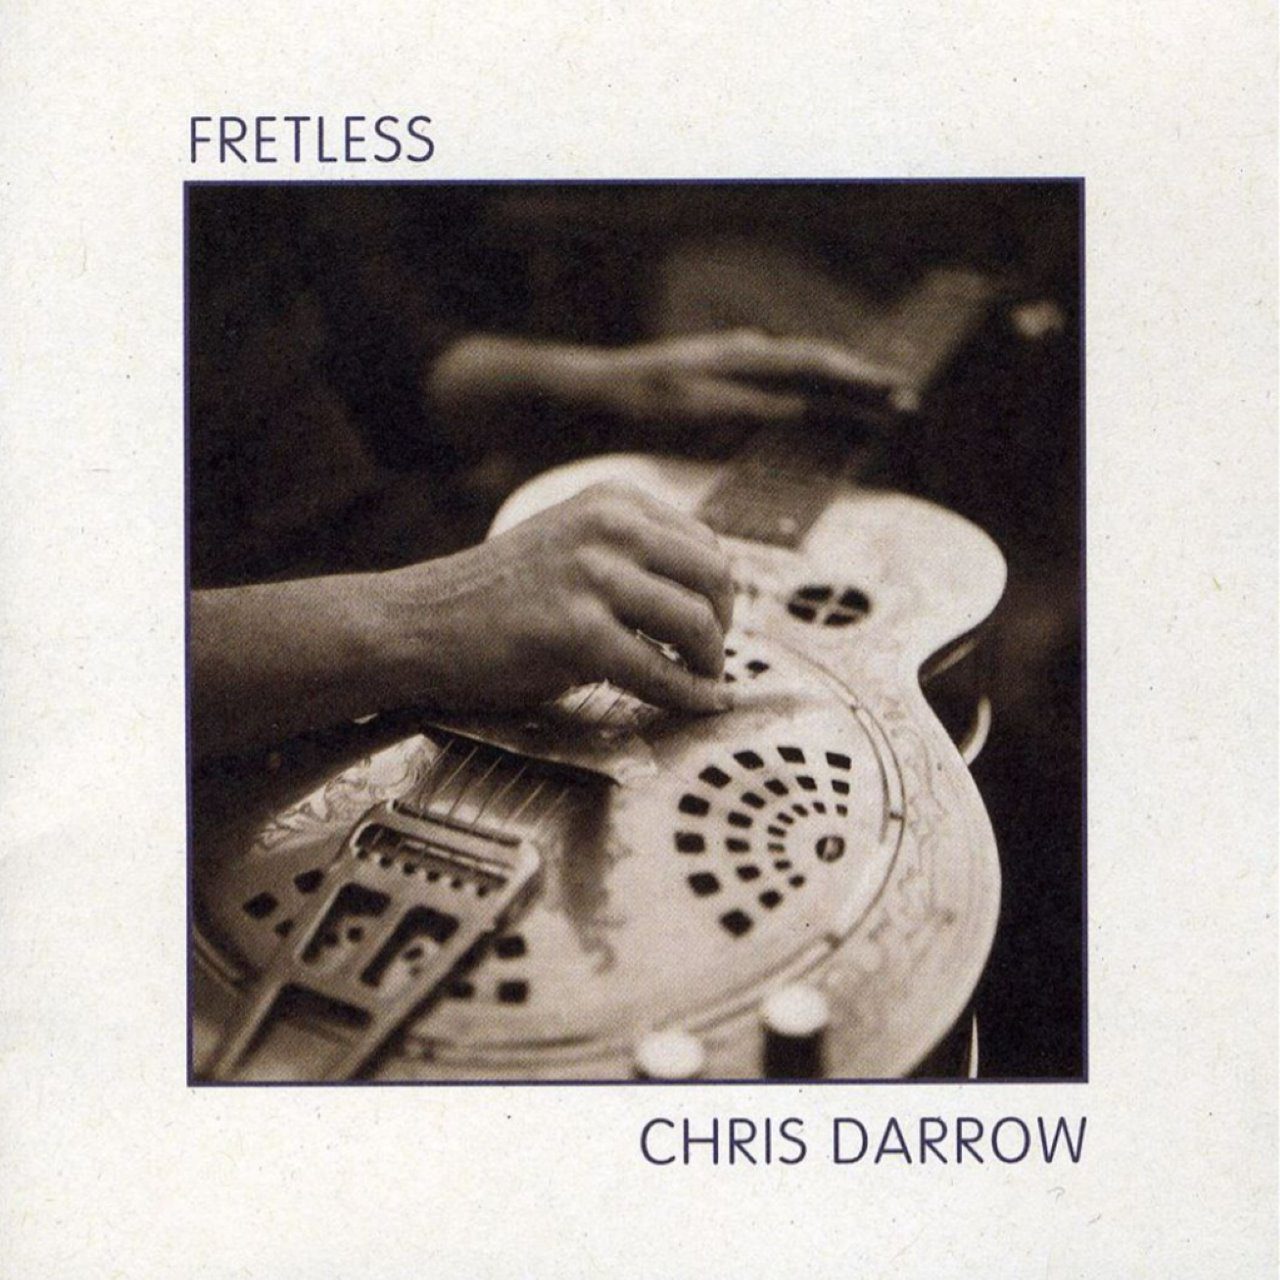 Chris Darrow - Fretless cover album